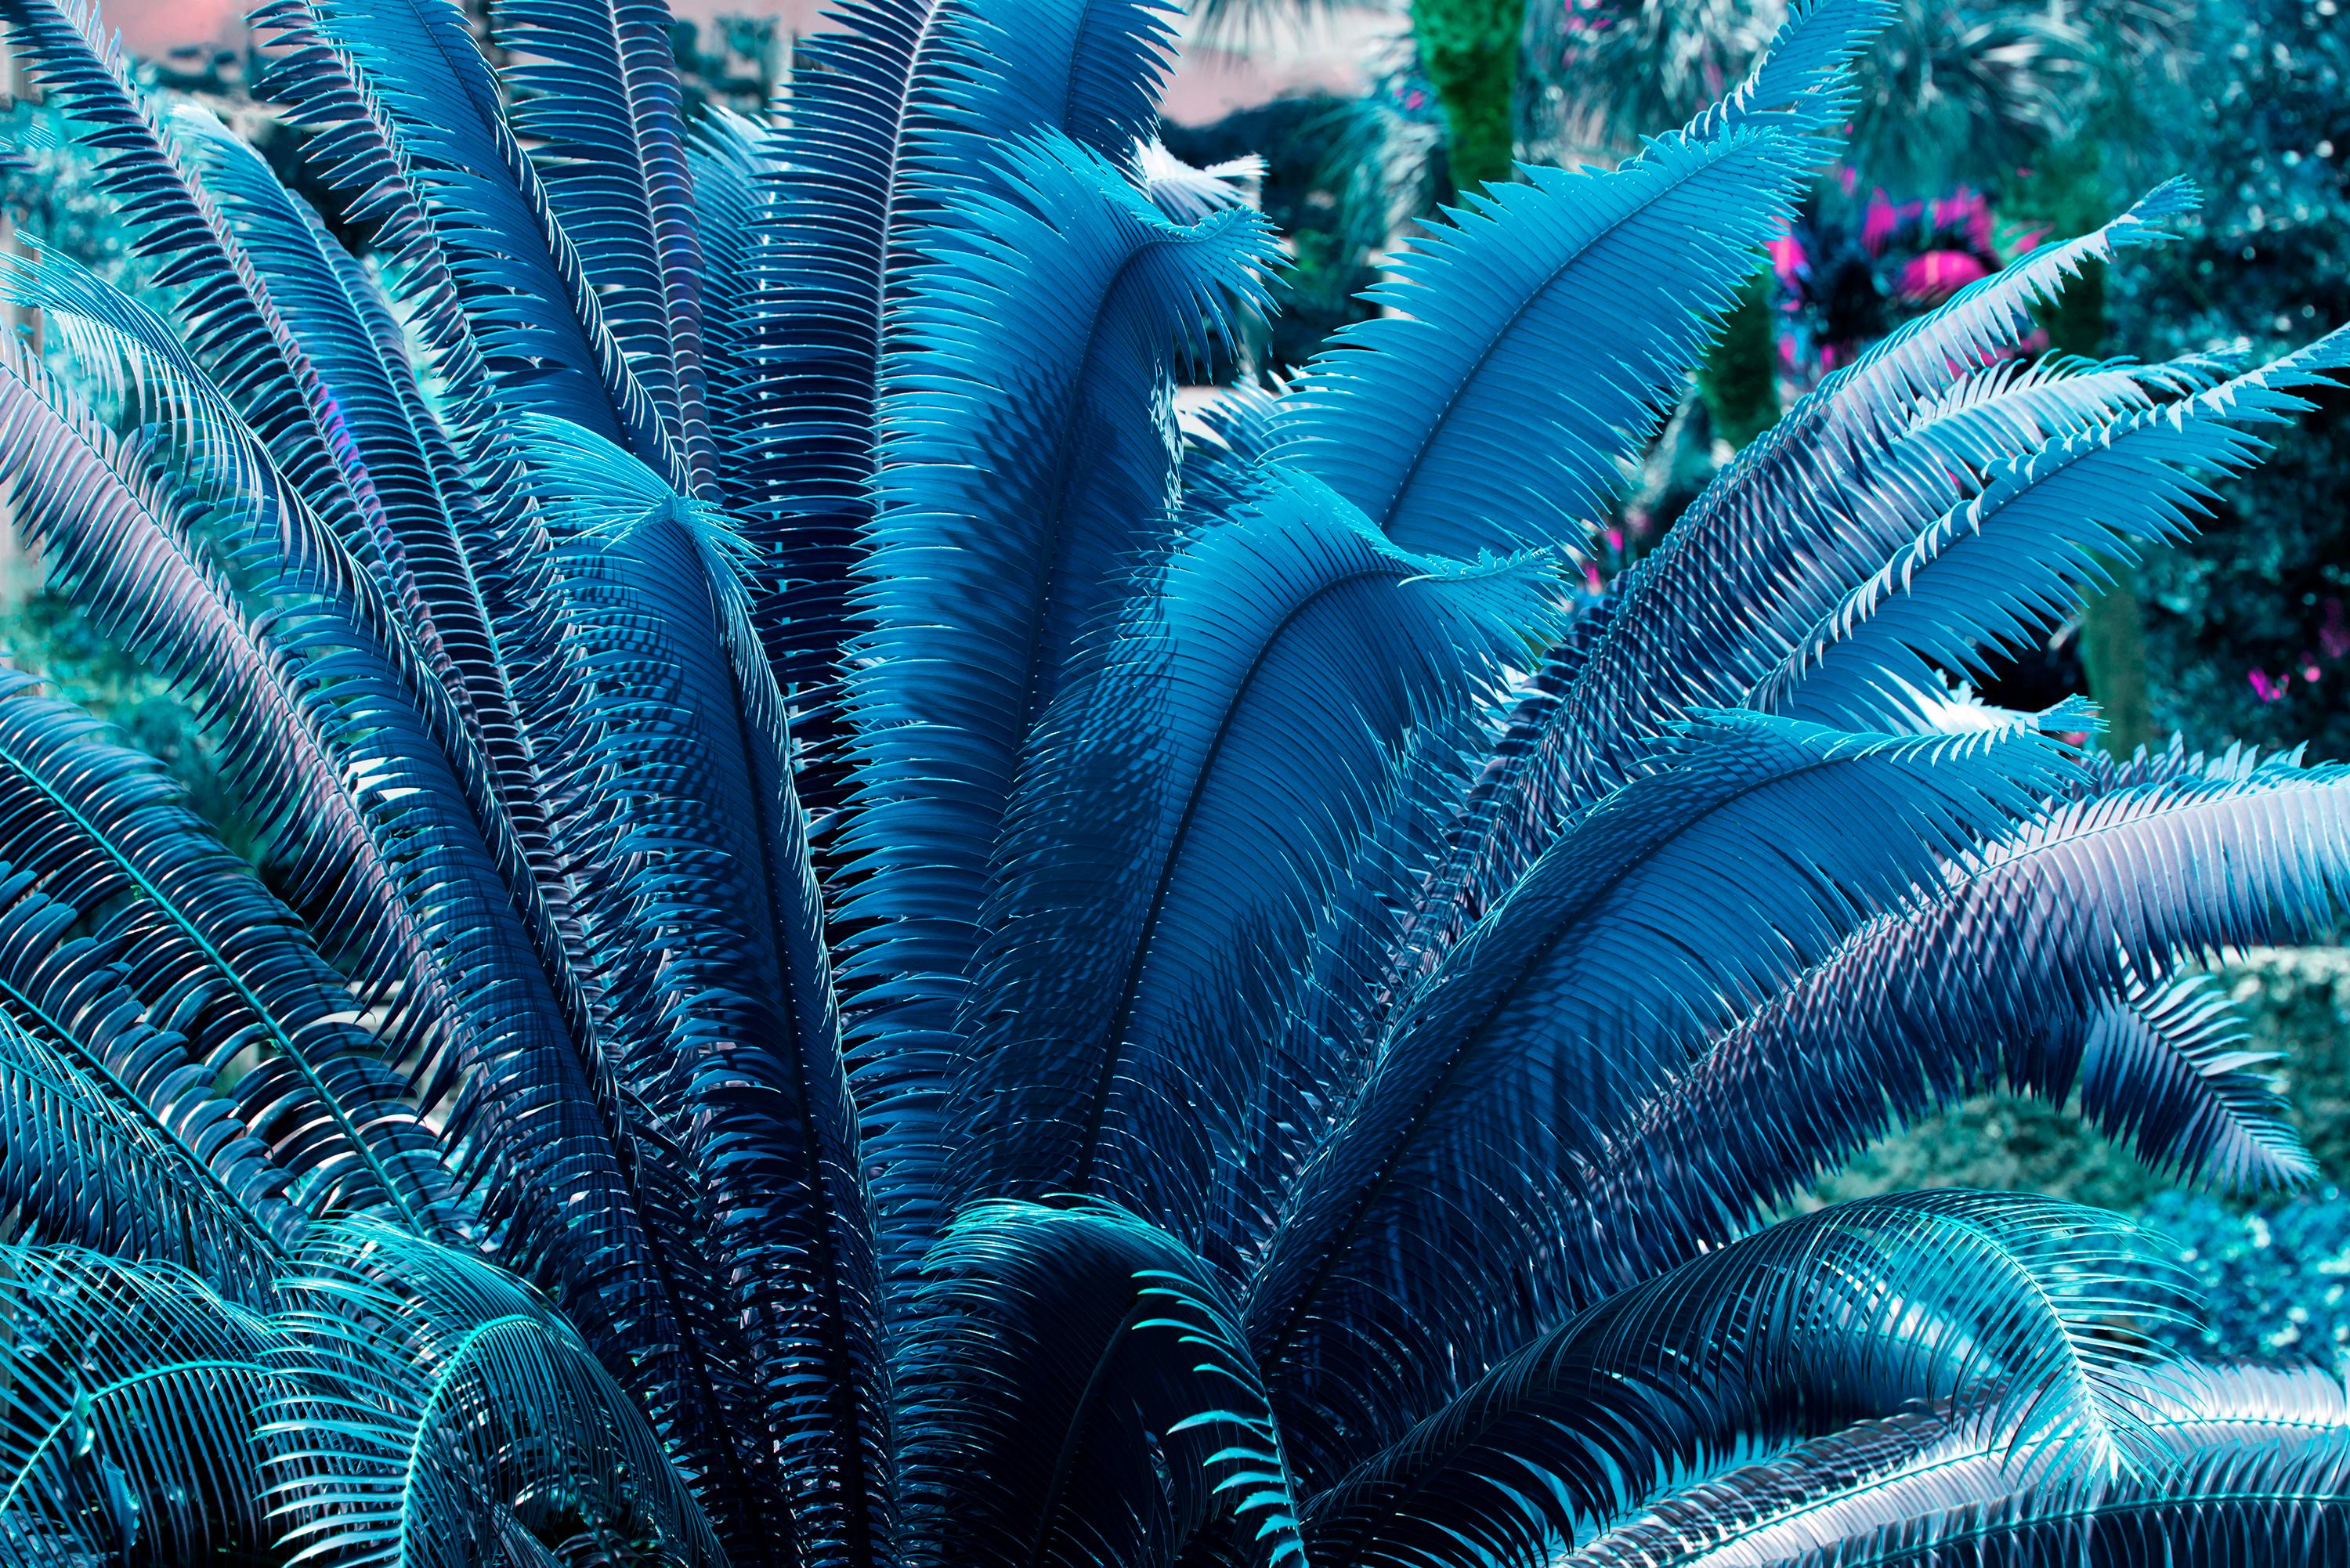 Robert Funk Abstract Photograph - Blue Ferns and a Hint of Magenta. Sculpture Garden